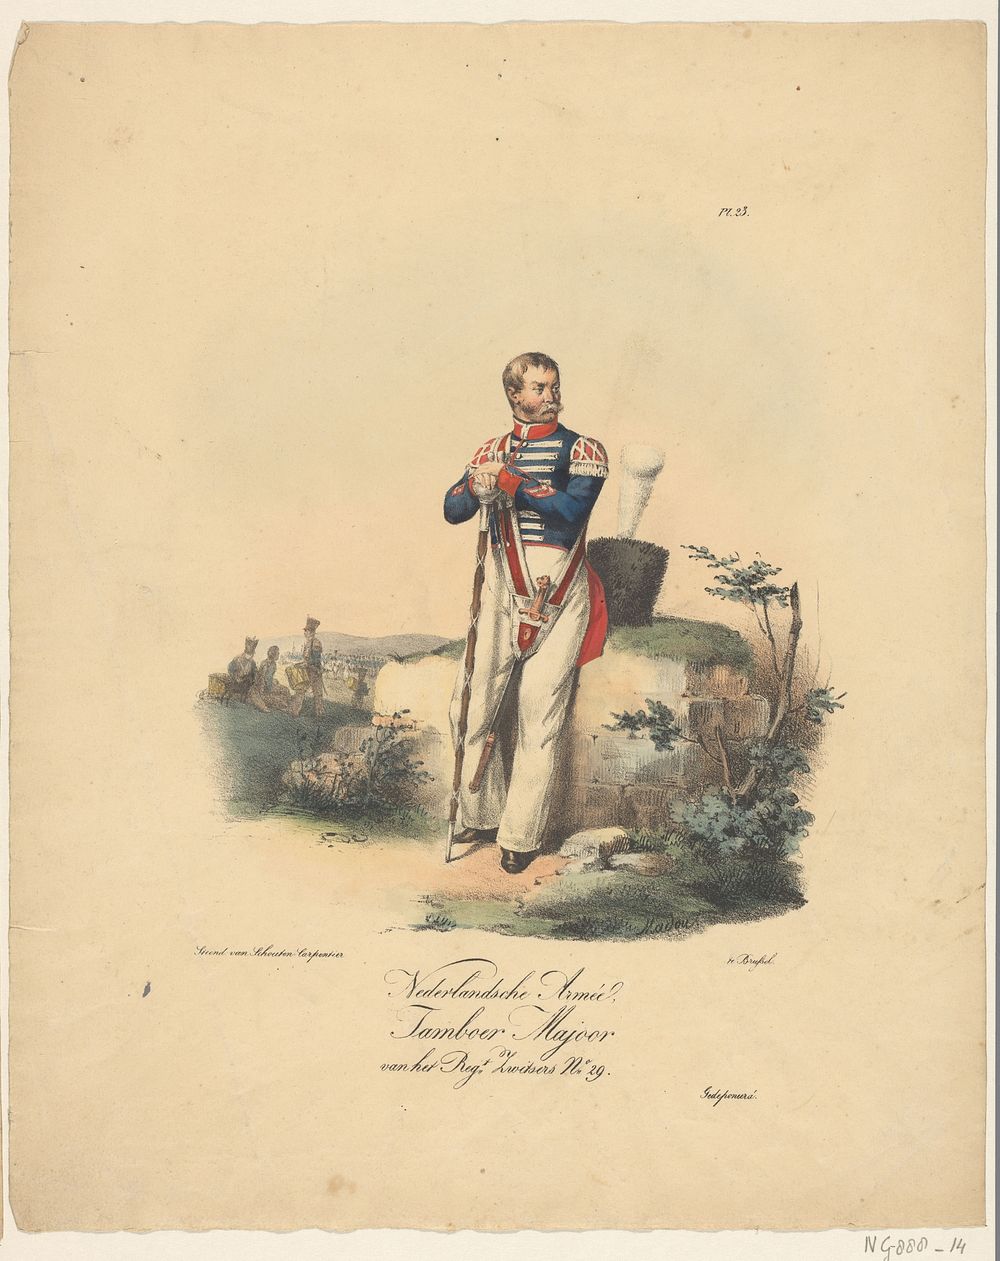 Nederlandsche Armée, Tamboer Majoor van het Reg.t Zwitsers No. 29 (1823 - 1827) by Jean Baptiste Madou and Schouten…